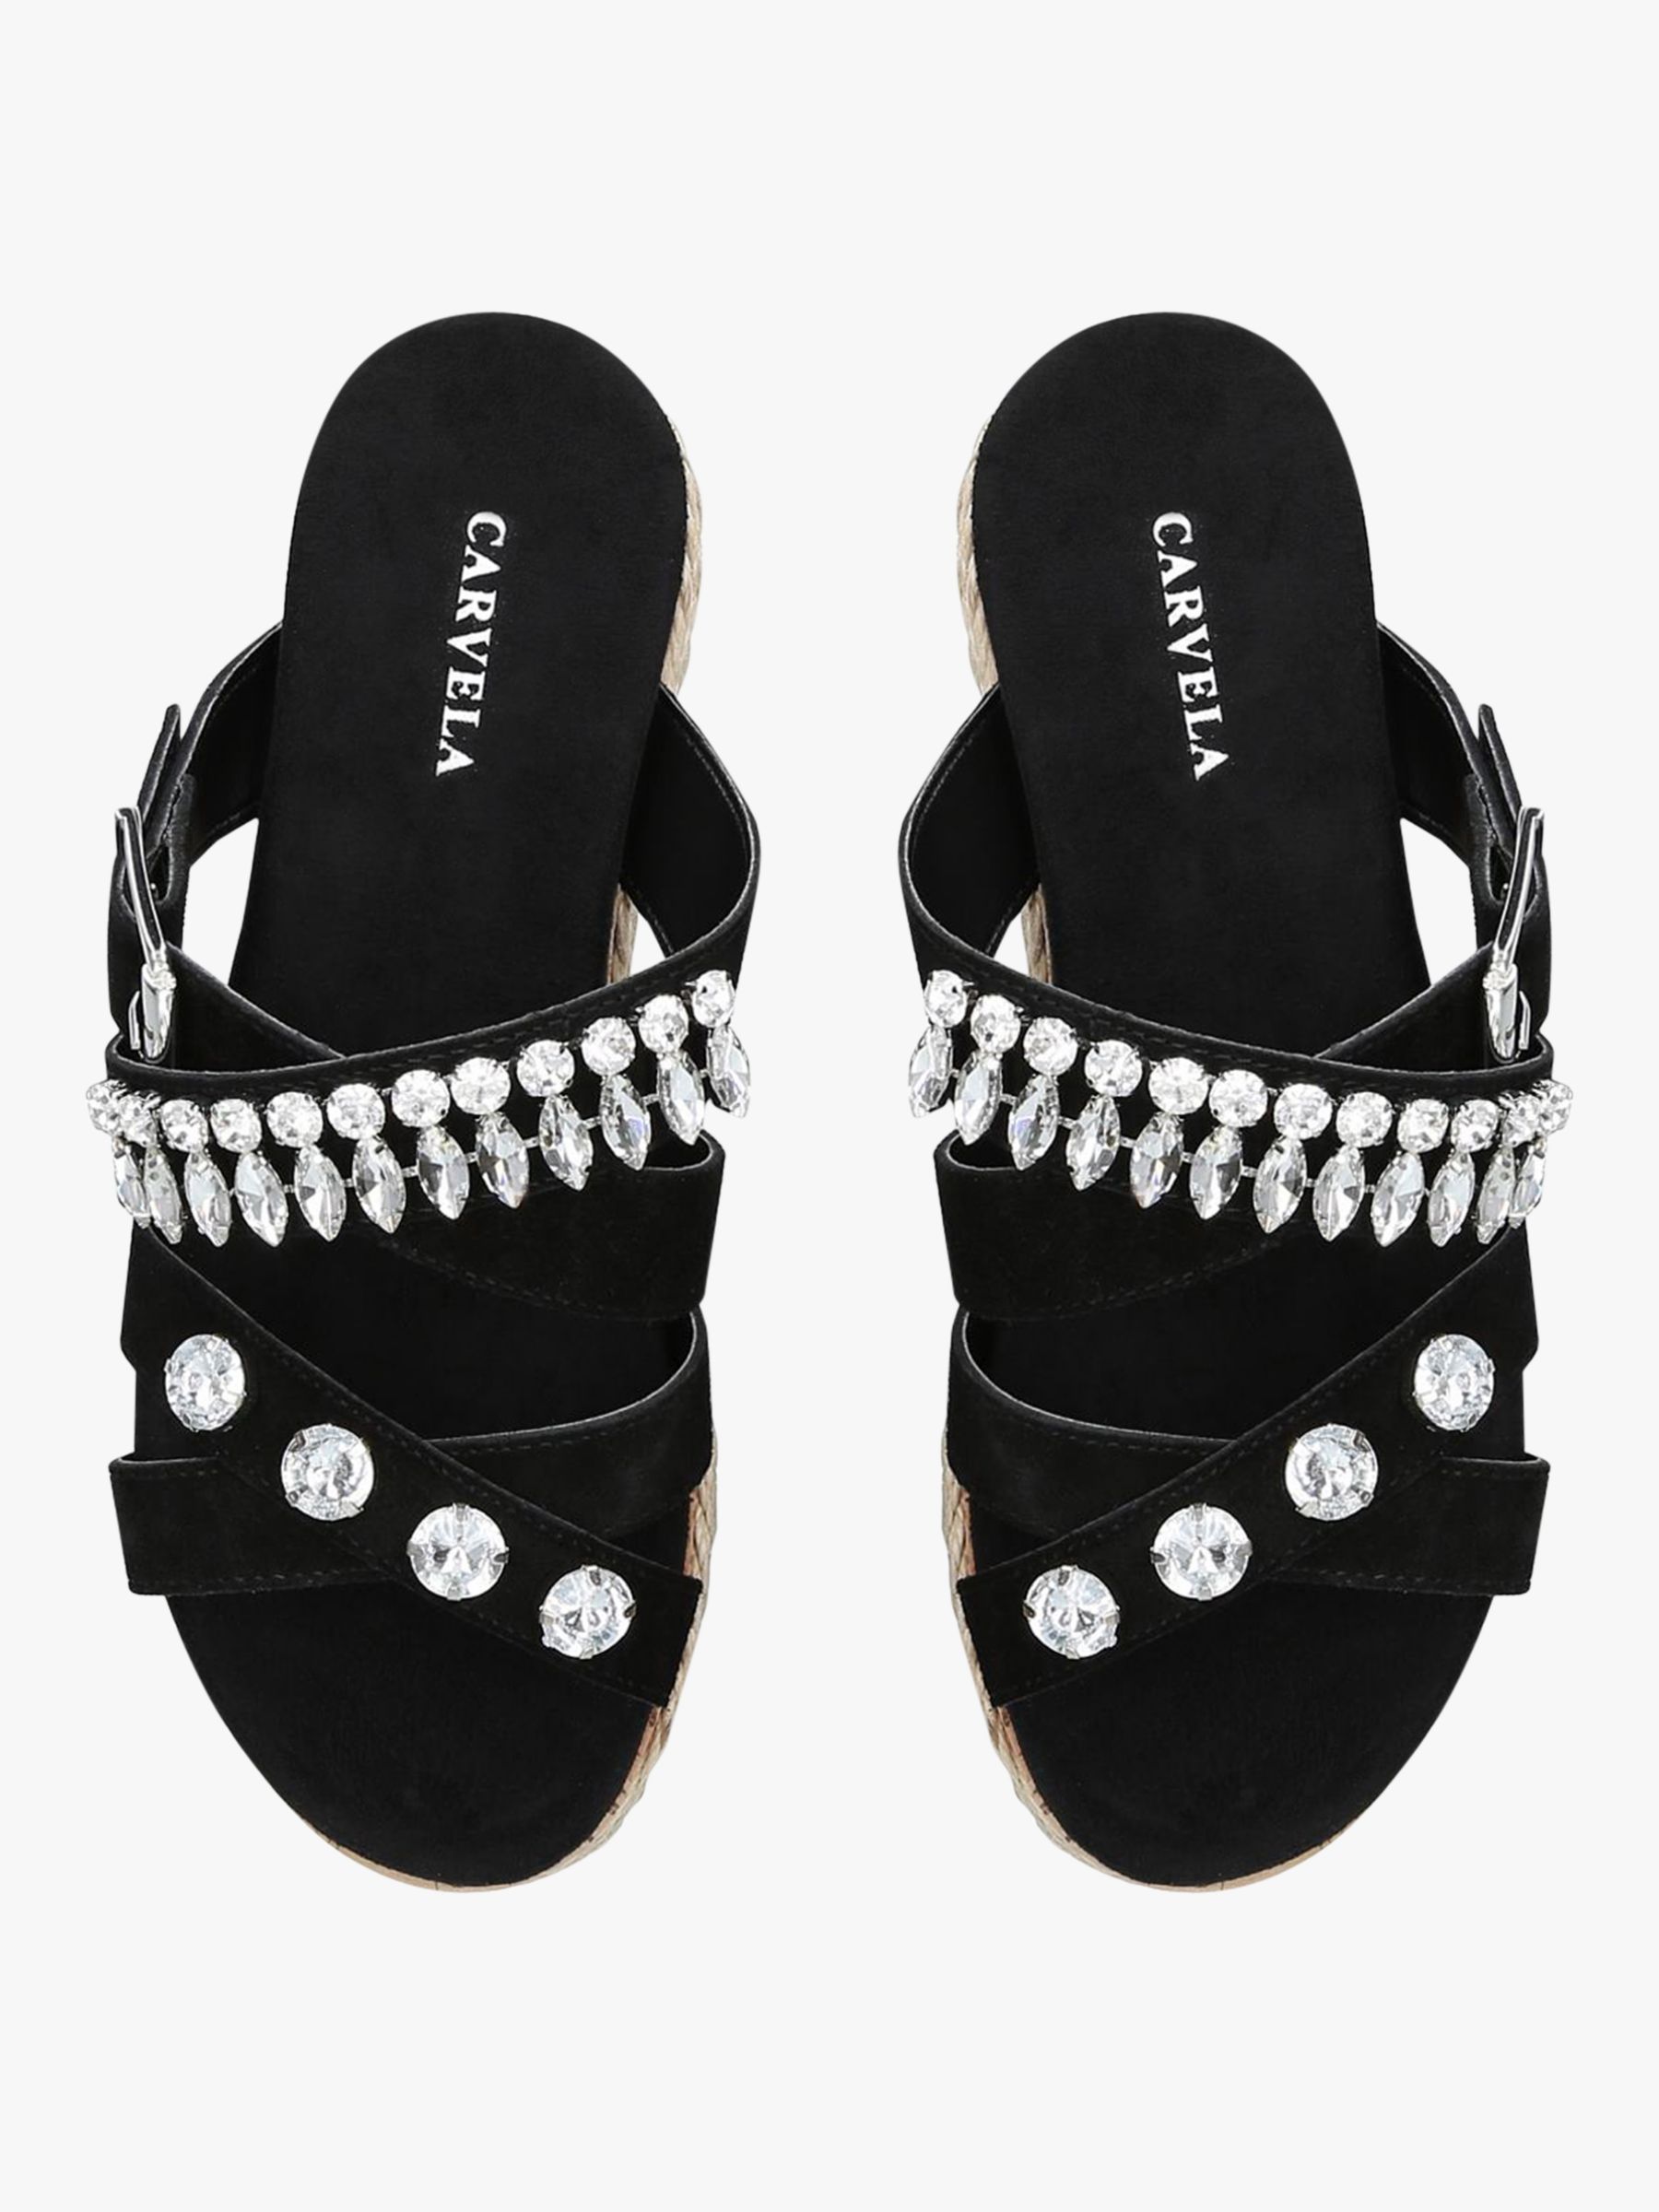 Carvela Katherine Suede Flatform Slider Sandals, Black